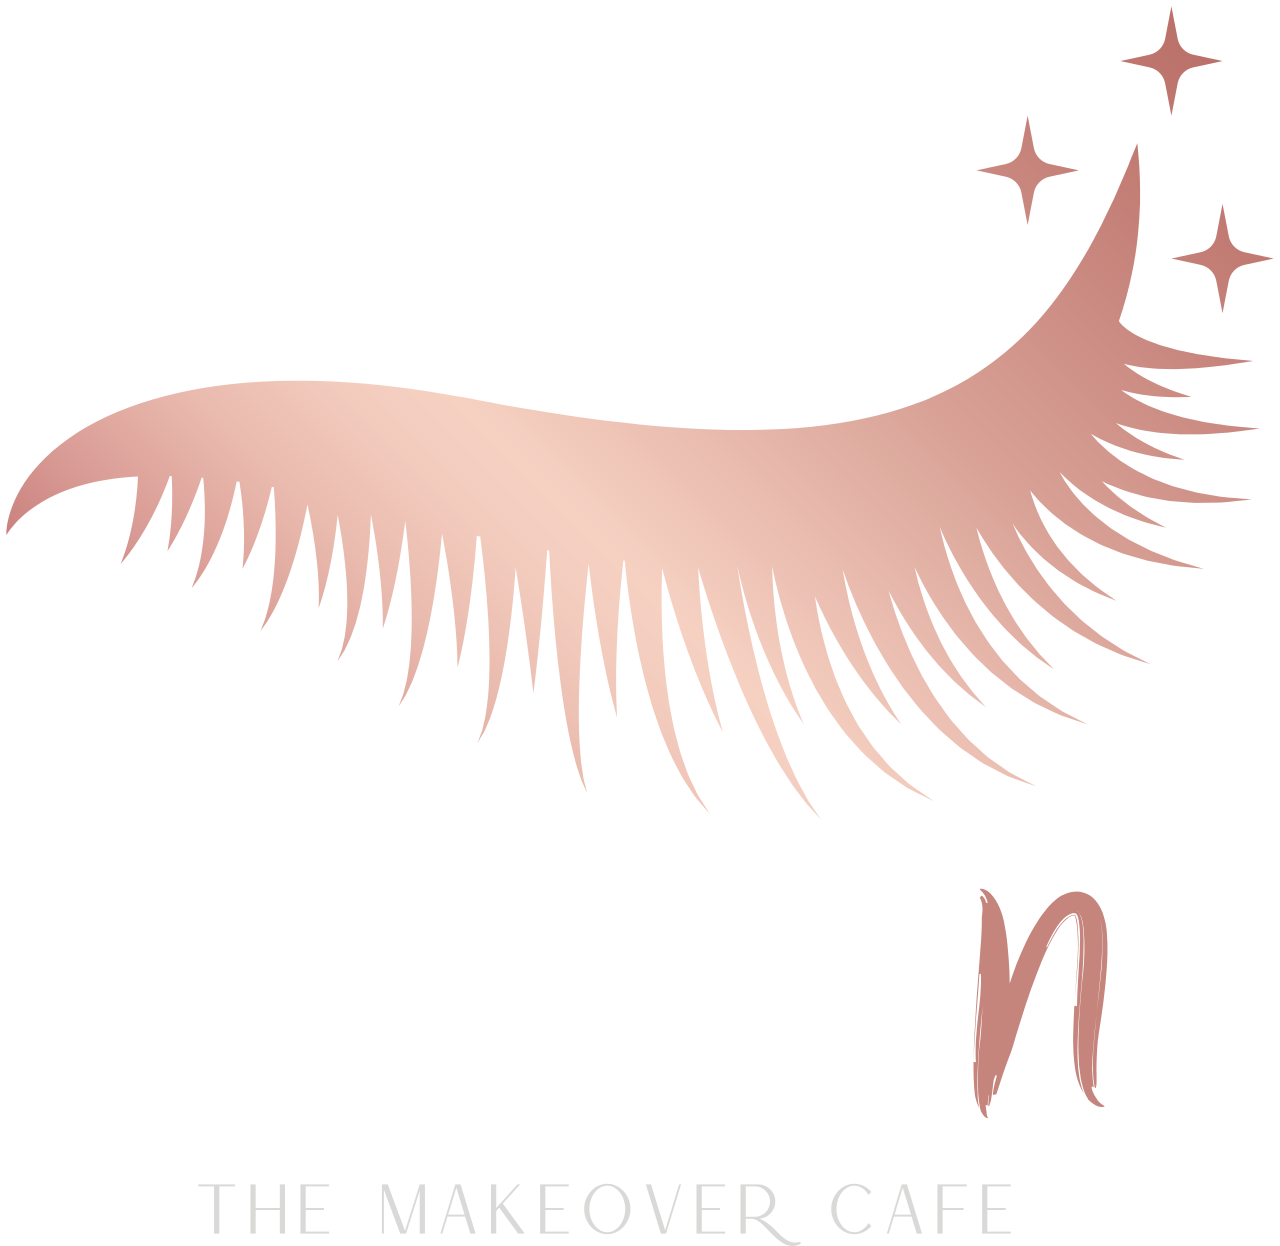 Studio's logo